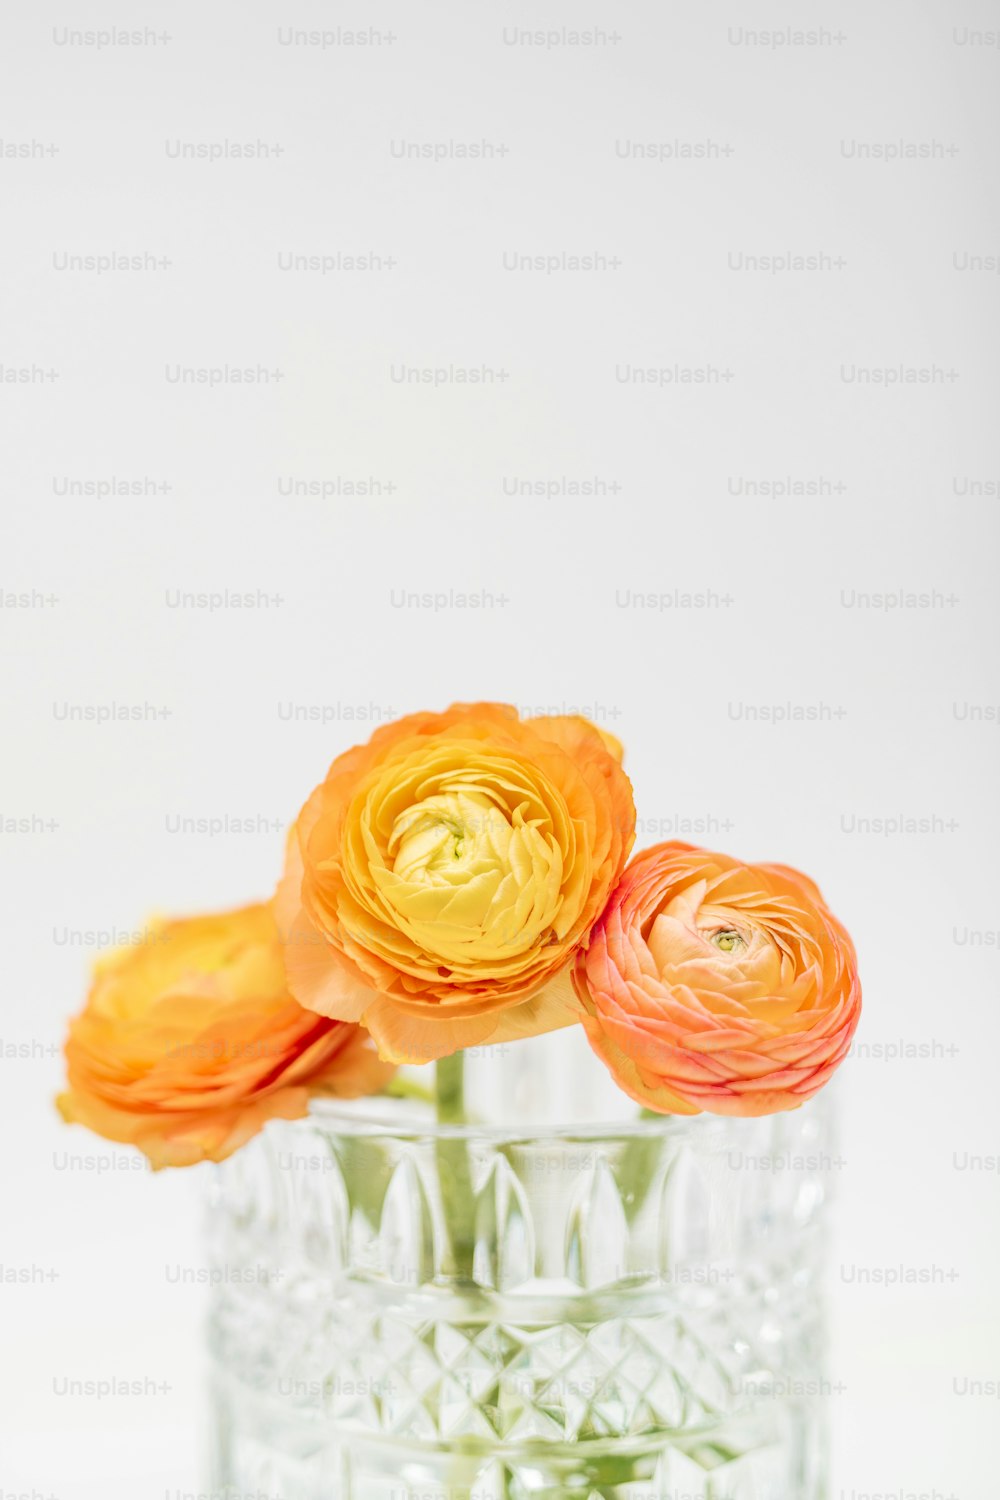 투명한 유리 꽃병에 세 개의 주황색 꽃